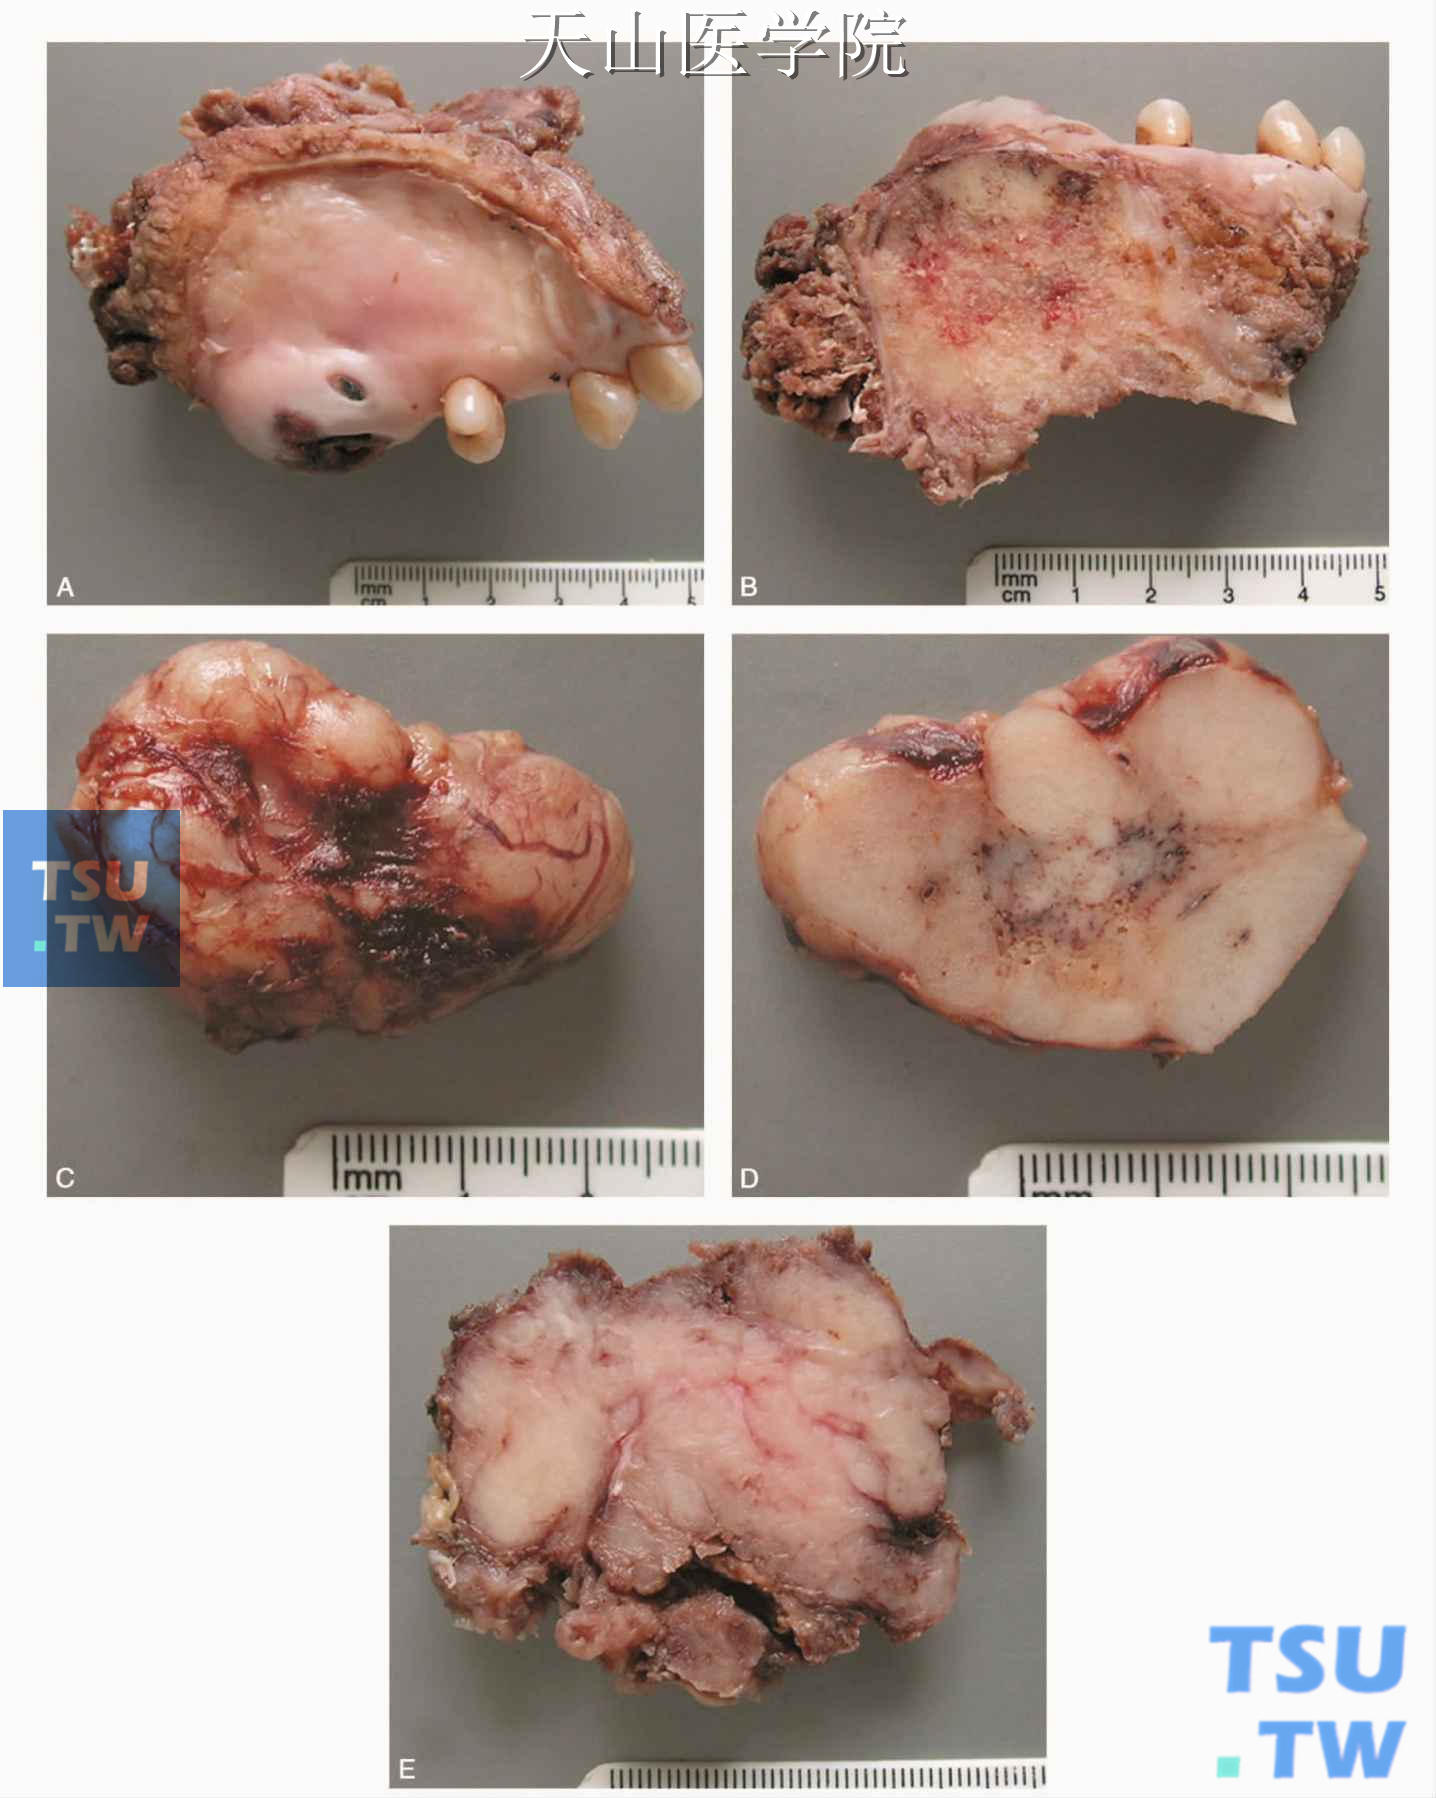 腺样囊性癌的大体观 A、B为同一例，C、D为同一例（罗海燕分切、摄影）